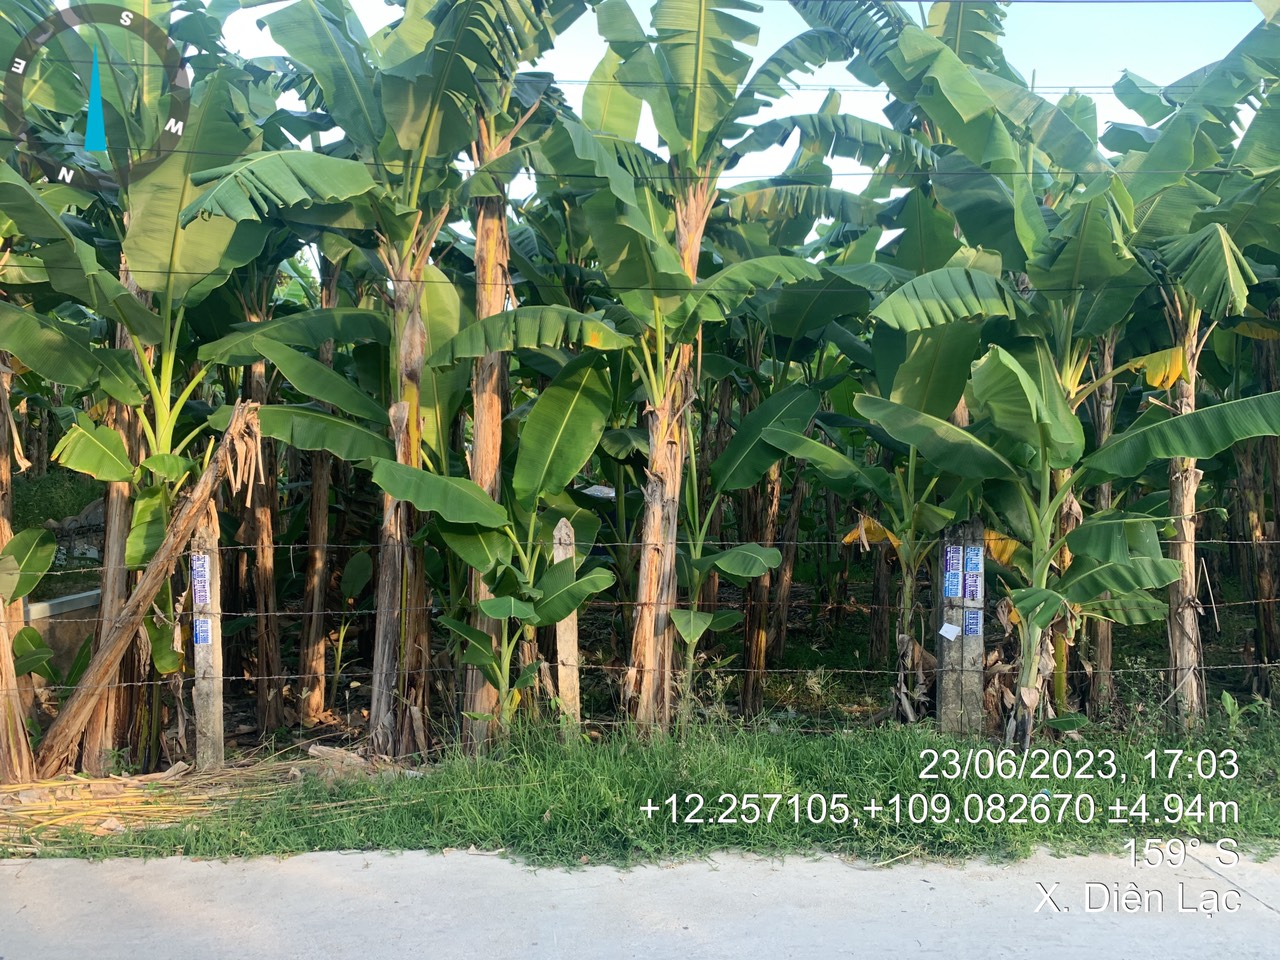 149 - HOT: Bán đất phân lô giá rẻ tại xã Diên Lạc, huyện Diên Khánh, tỉnh Khánh Hòa